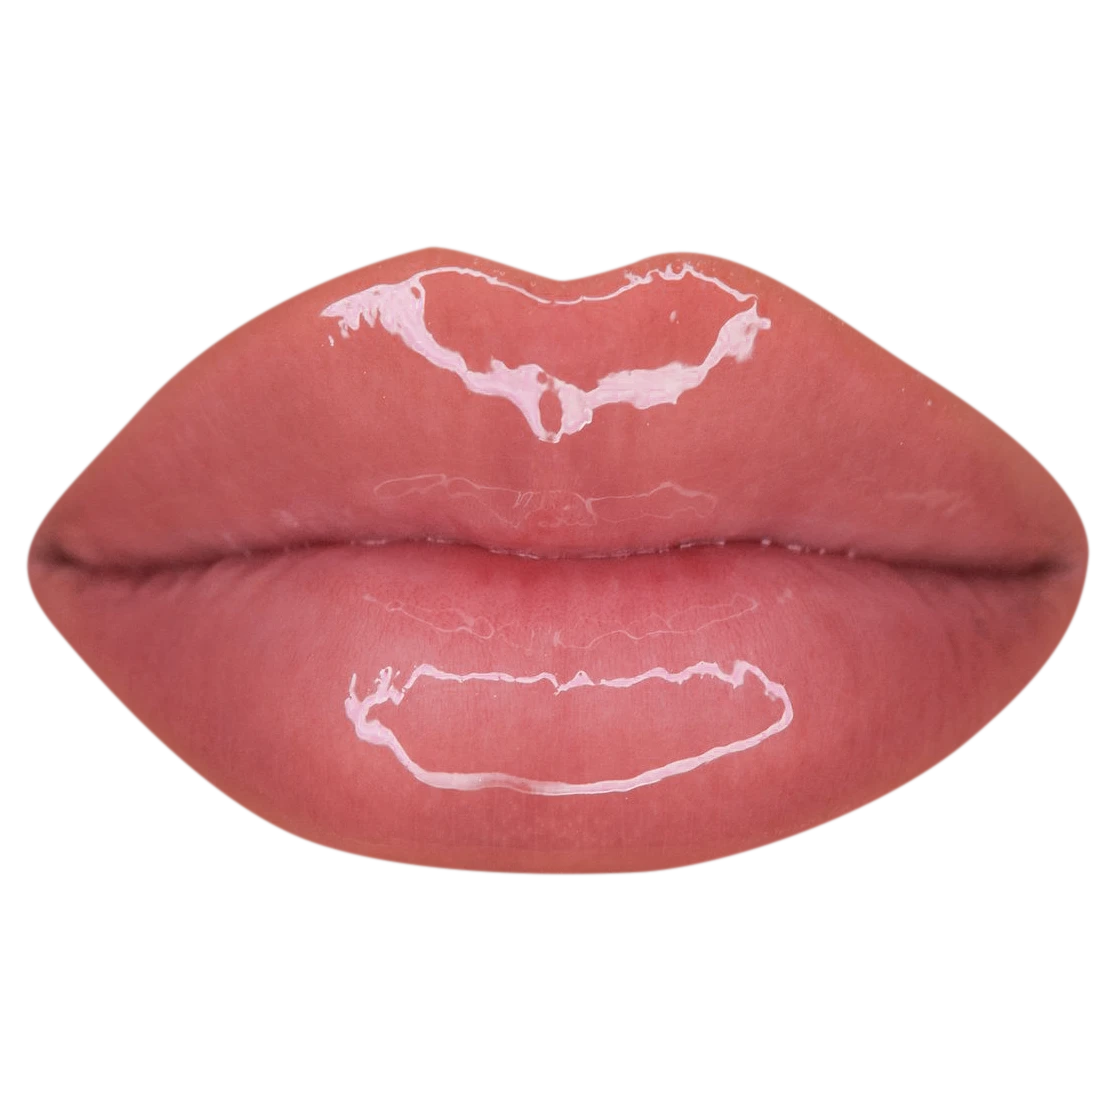 Baddie Lips PNG HD Image